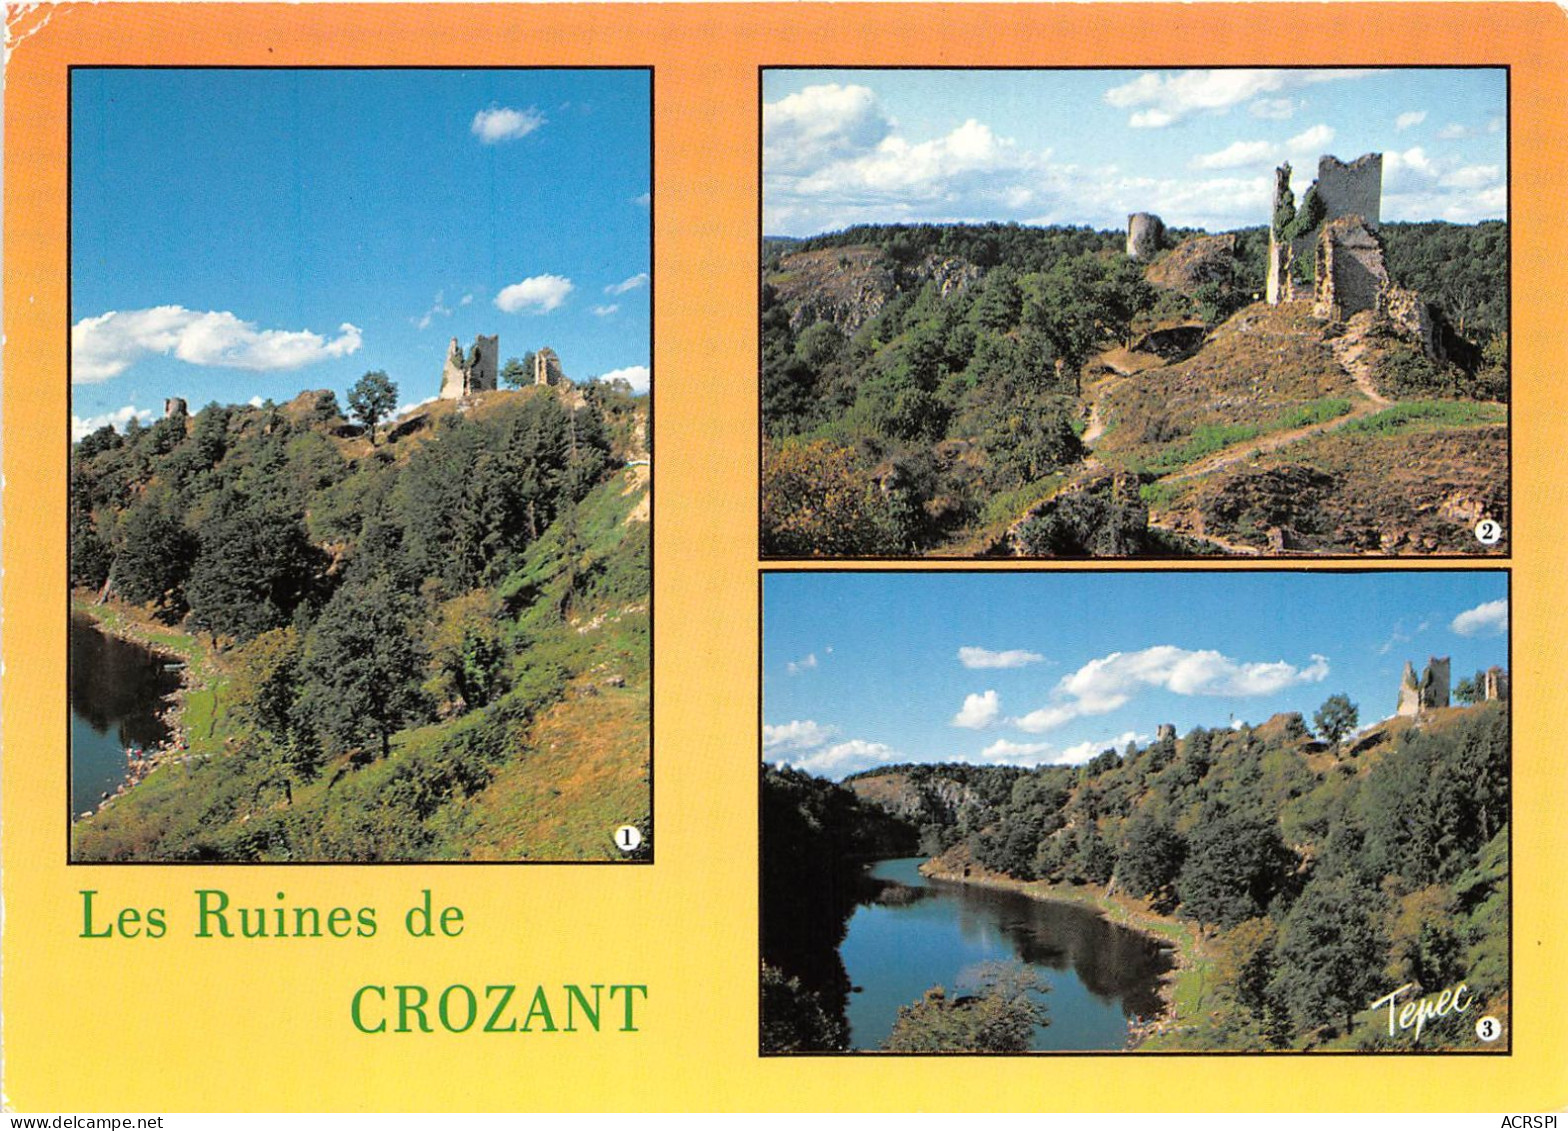 Les Ruines De CROZANT XIIIe Siecle Situee Au Confluent De La Creuse Et De La Sedelle 21(scan Recto-verso) MA2182 - Crozant